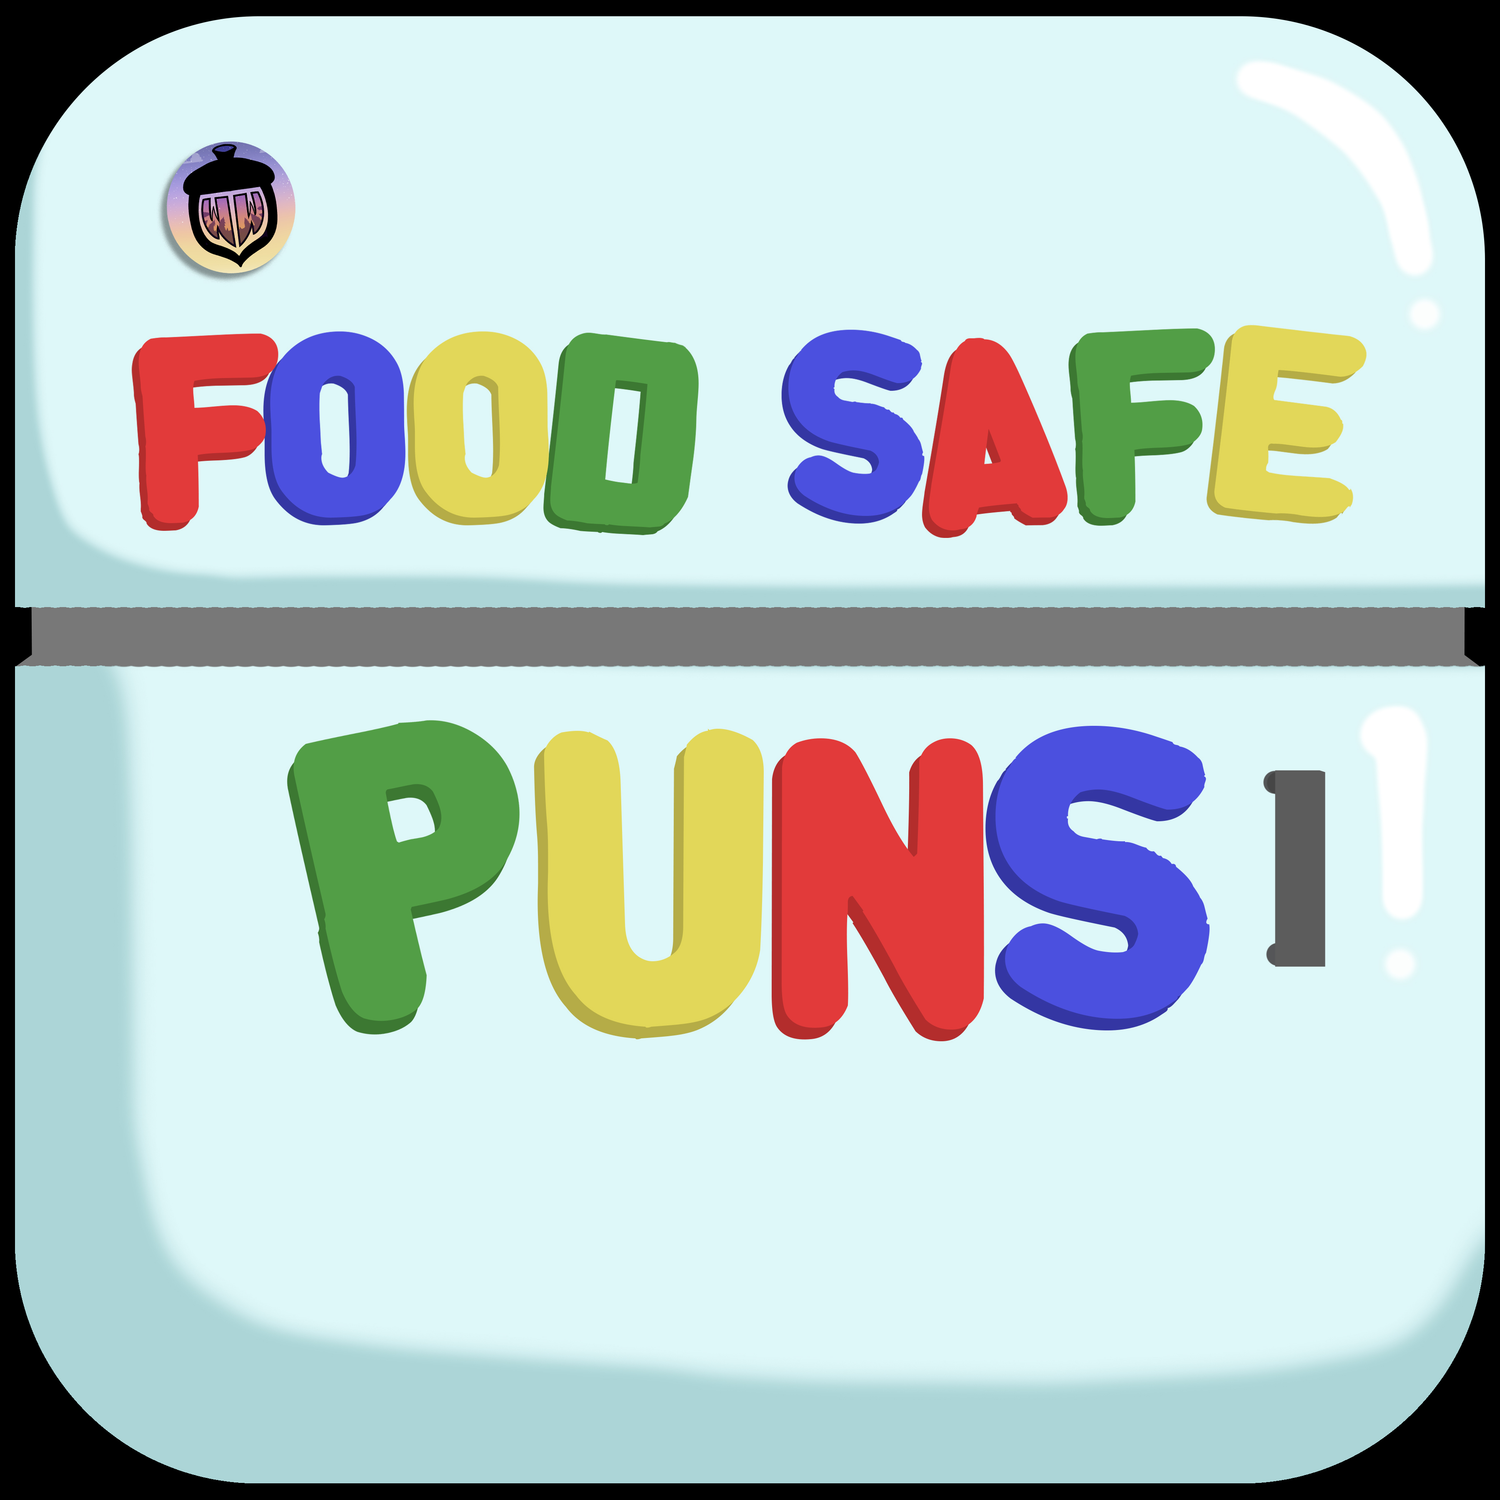 Food Safe Puns